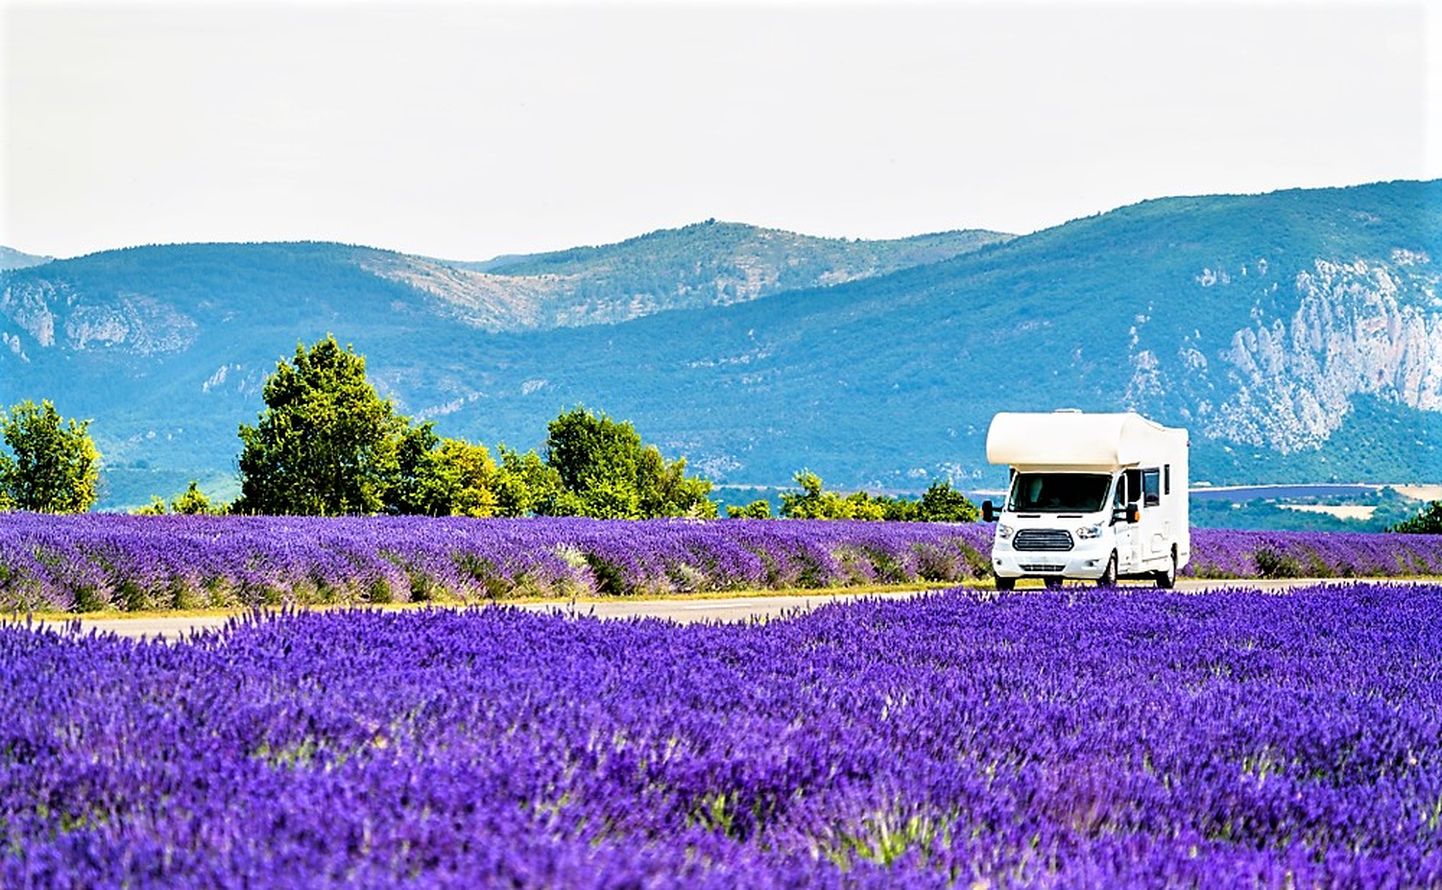 Prantsusmaal lavendlipõldude vahel.